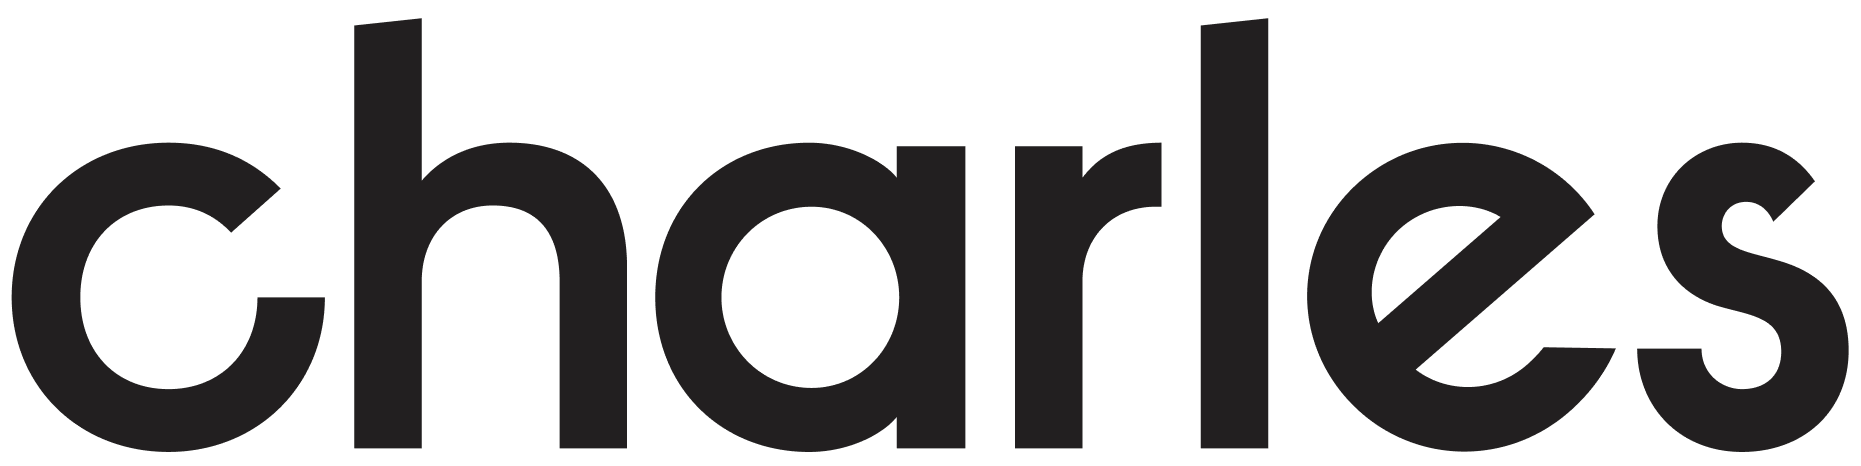 charles logo